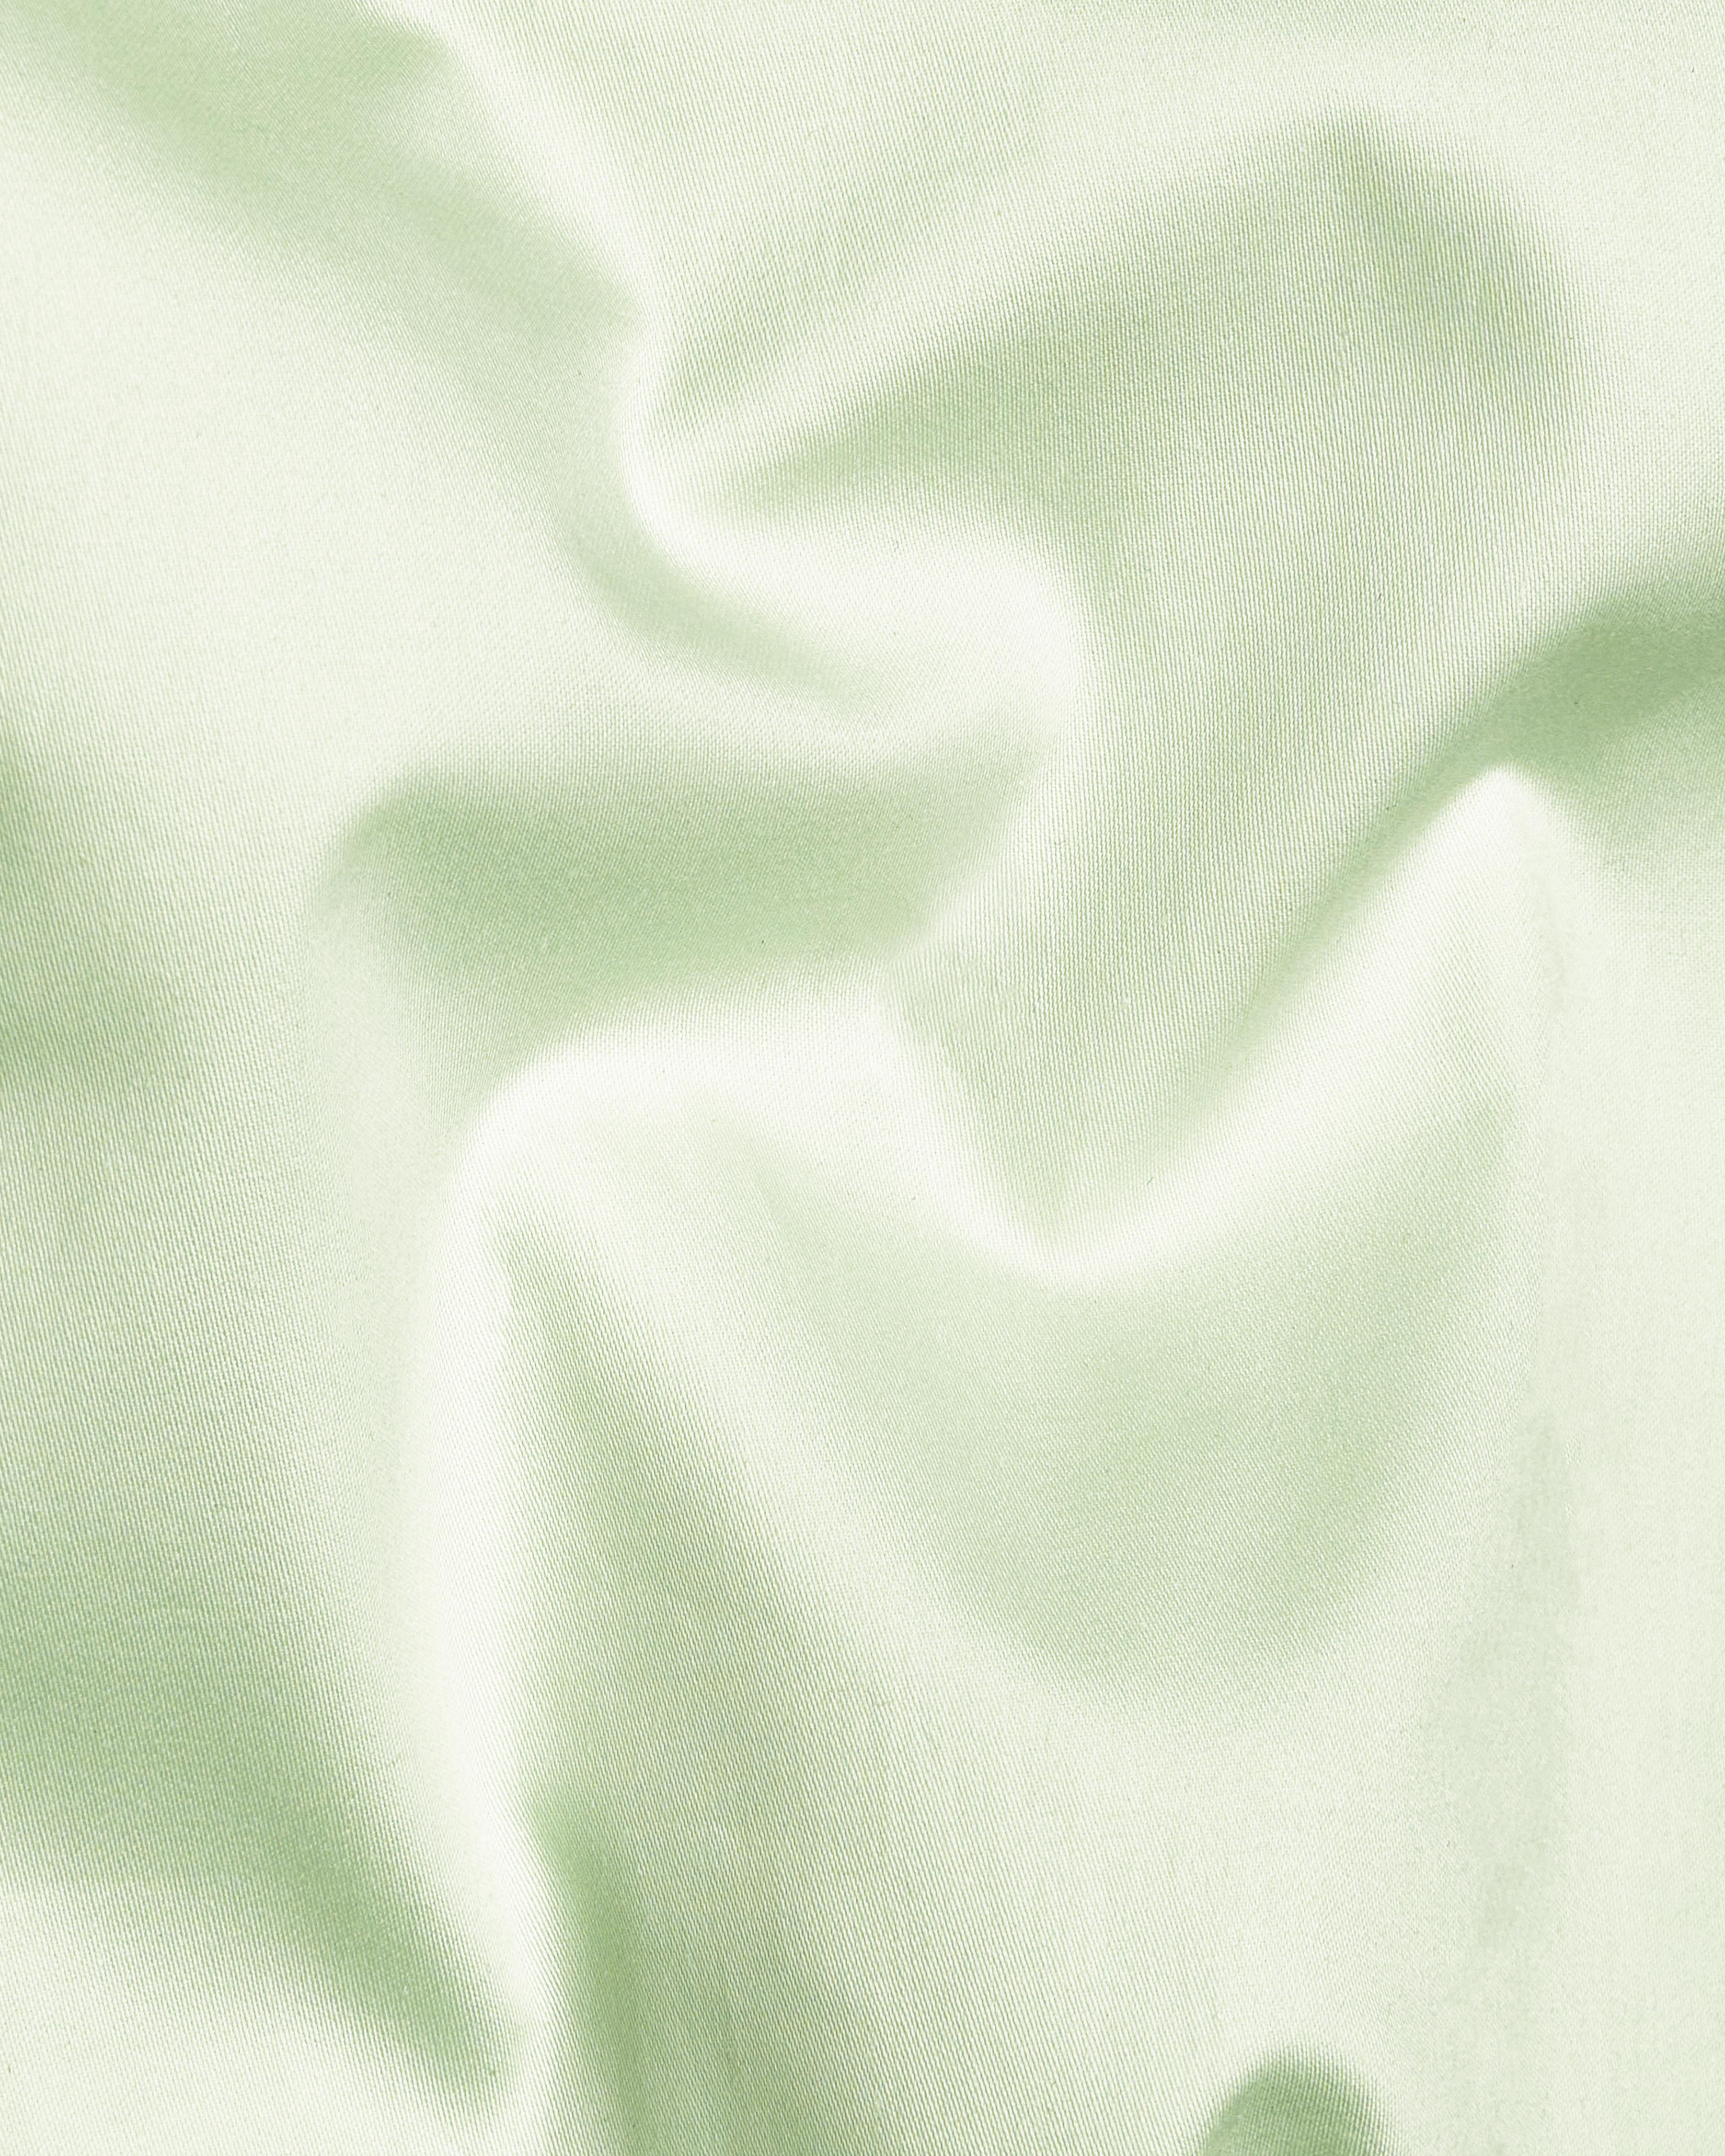 Surf Crest Green Super Soft Premium Cotton Shirt 8855-BLK-38, 8855-BLK-H-38,  8855-BLK-39,  8855-BLK-H-39,  8855-BLK-40,  8855-BLK-H-40,  8855-BLK-42,  8855-BLK-H-42,  8855-BLK-44,  8855-BLK-H-44,  8855-BLK-46,  8855-BLK-H-46,  8855-BLK-48,  8855-BLK-H-48,  8855-BLK-50,  8855-BLK-H-50,  8855-BLK-52,  8855-BLK-H-52